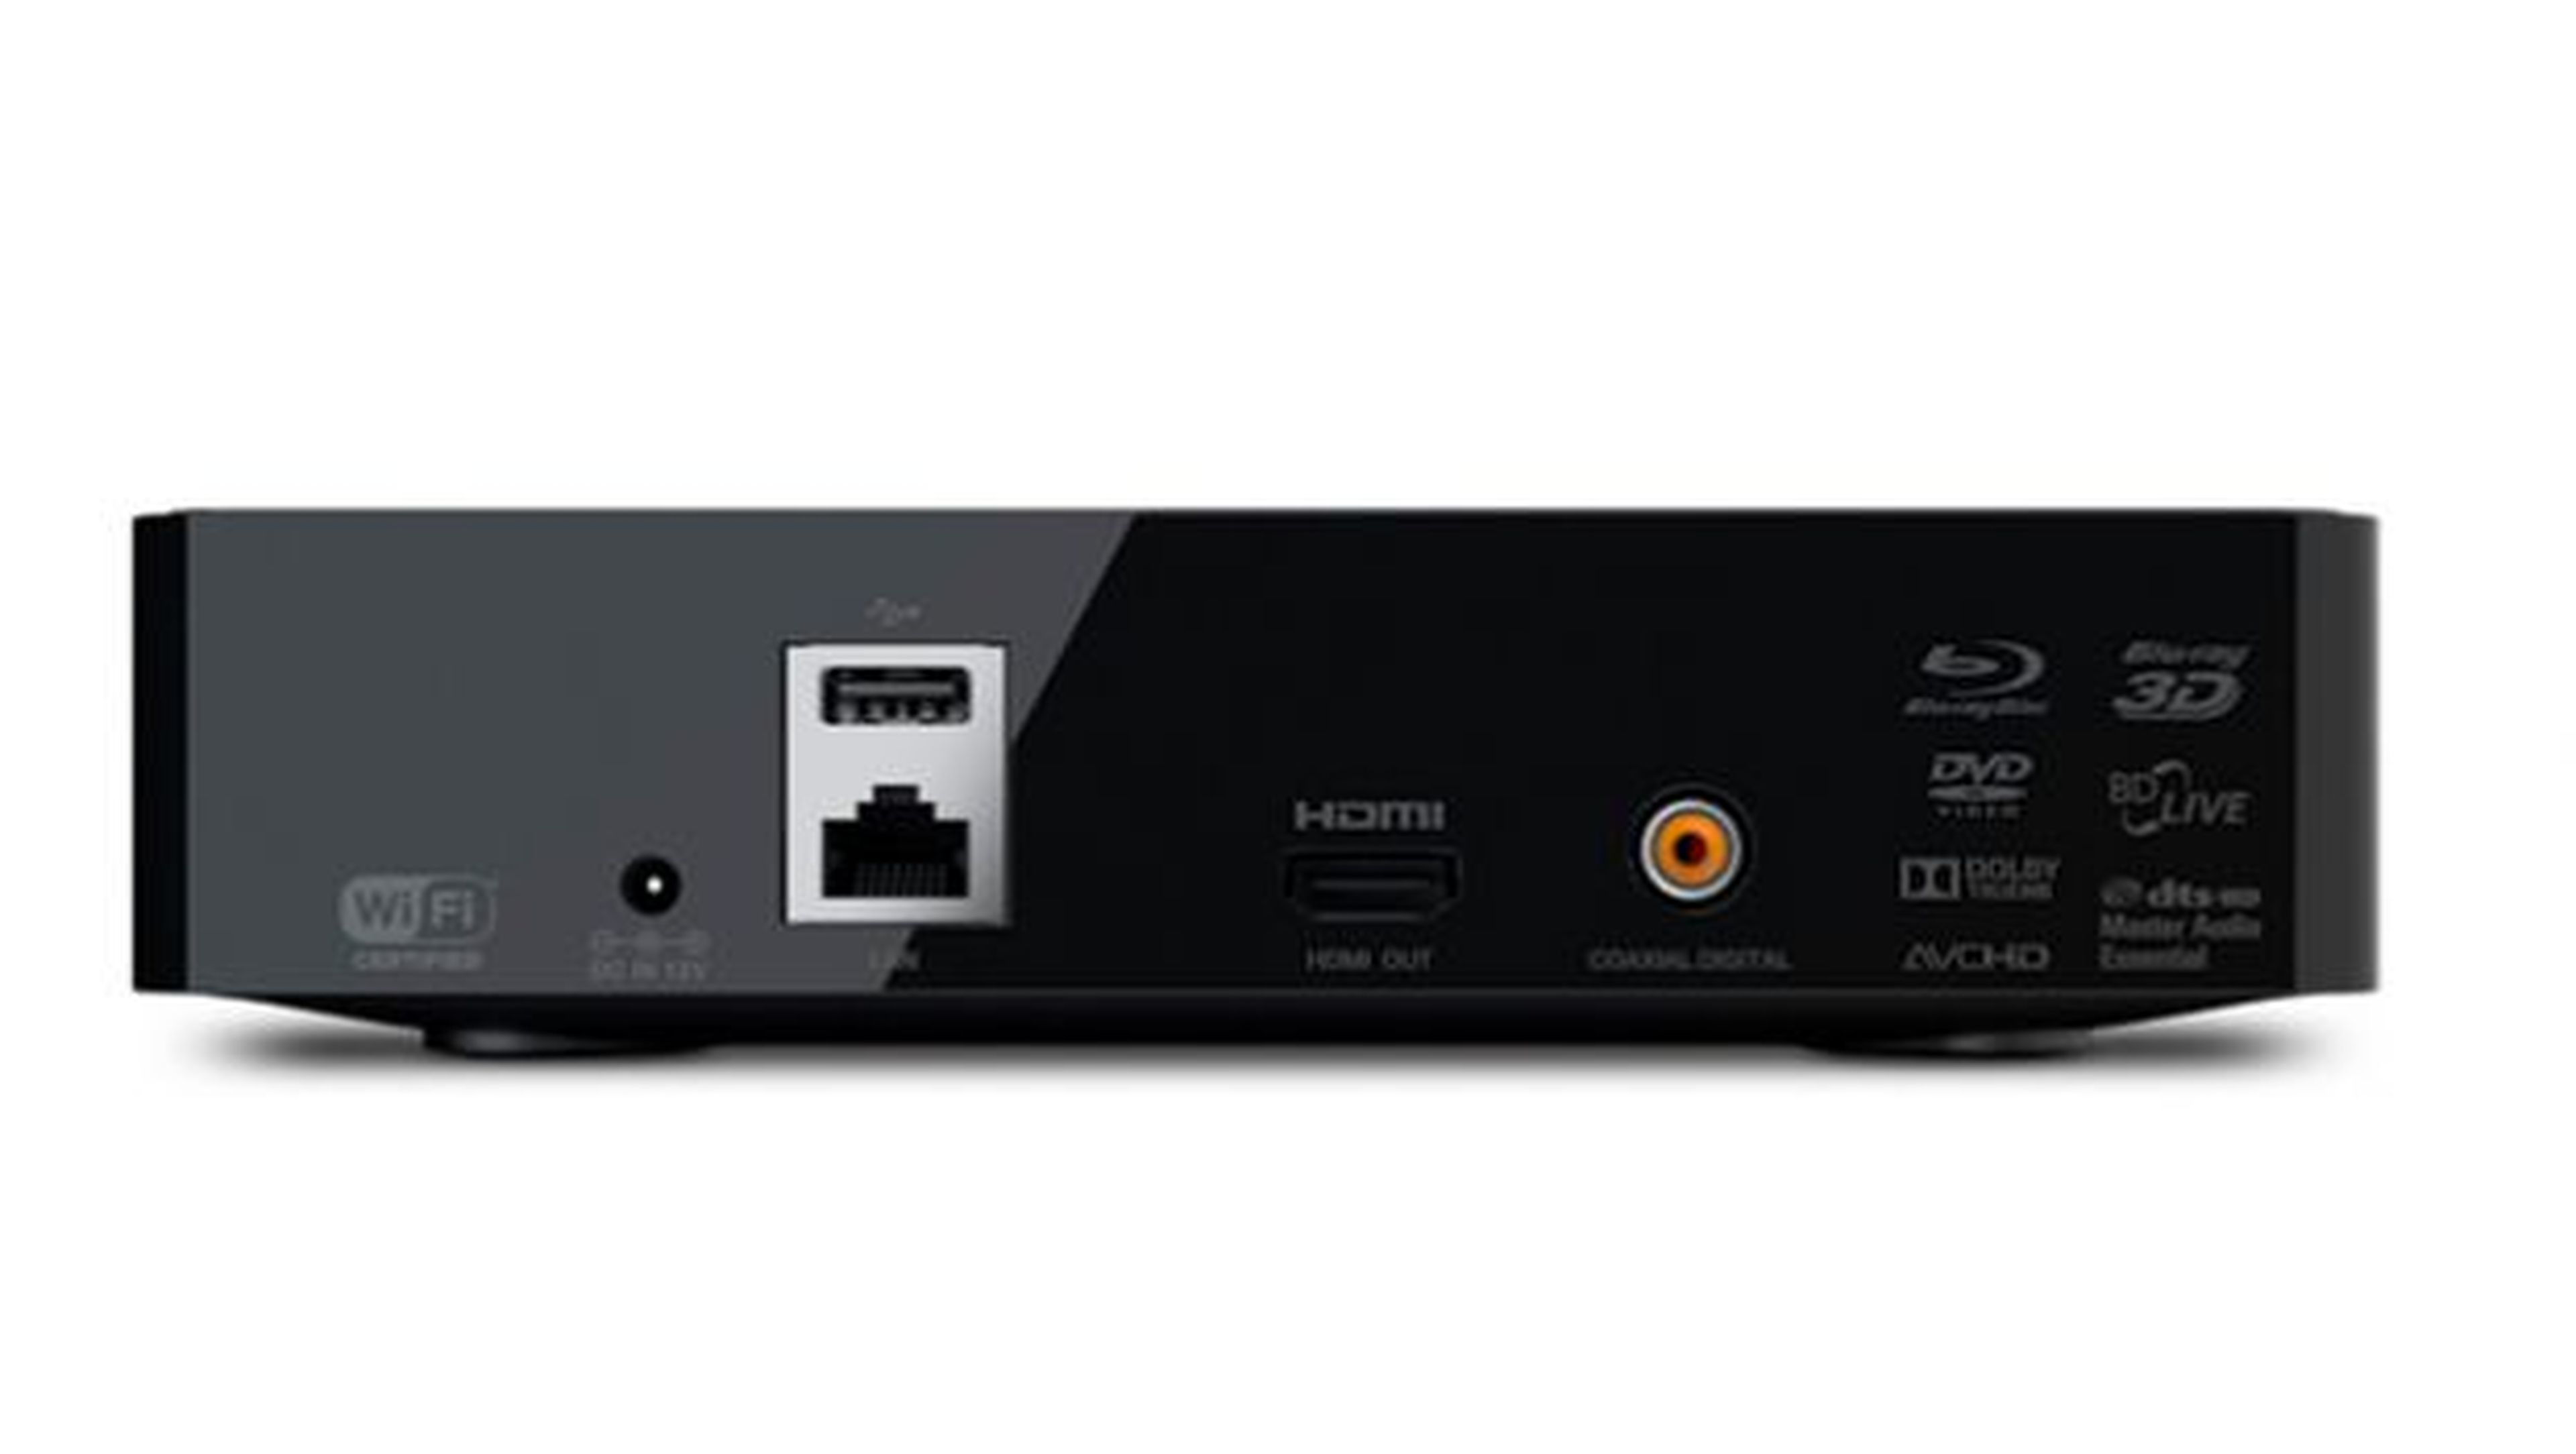 Algunas lectoras y grabadoras de DVD y Blu-Ray incluyen conectividad a redes cableadas, Wi-Fi o protocolos inalámbricos como Miracast